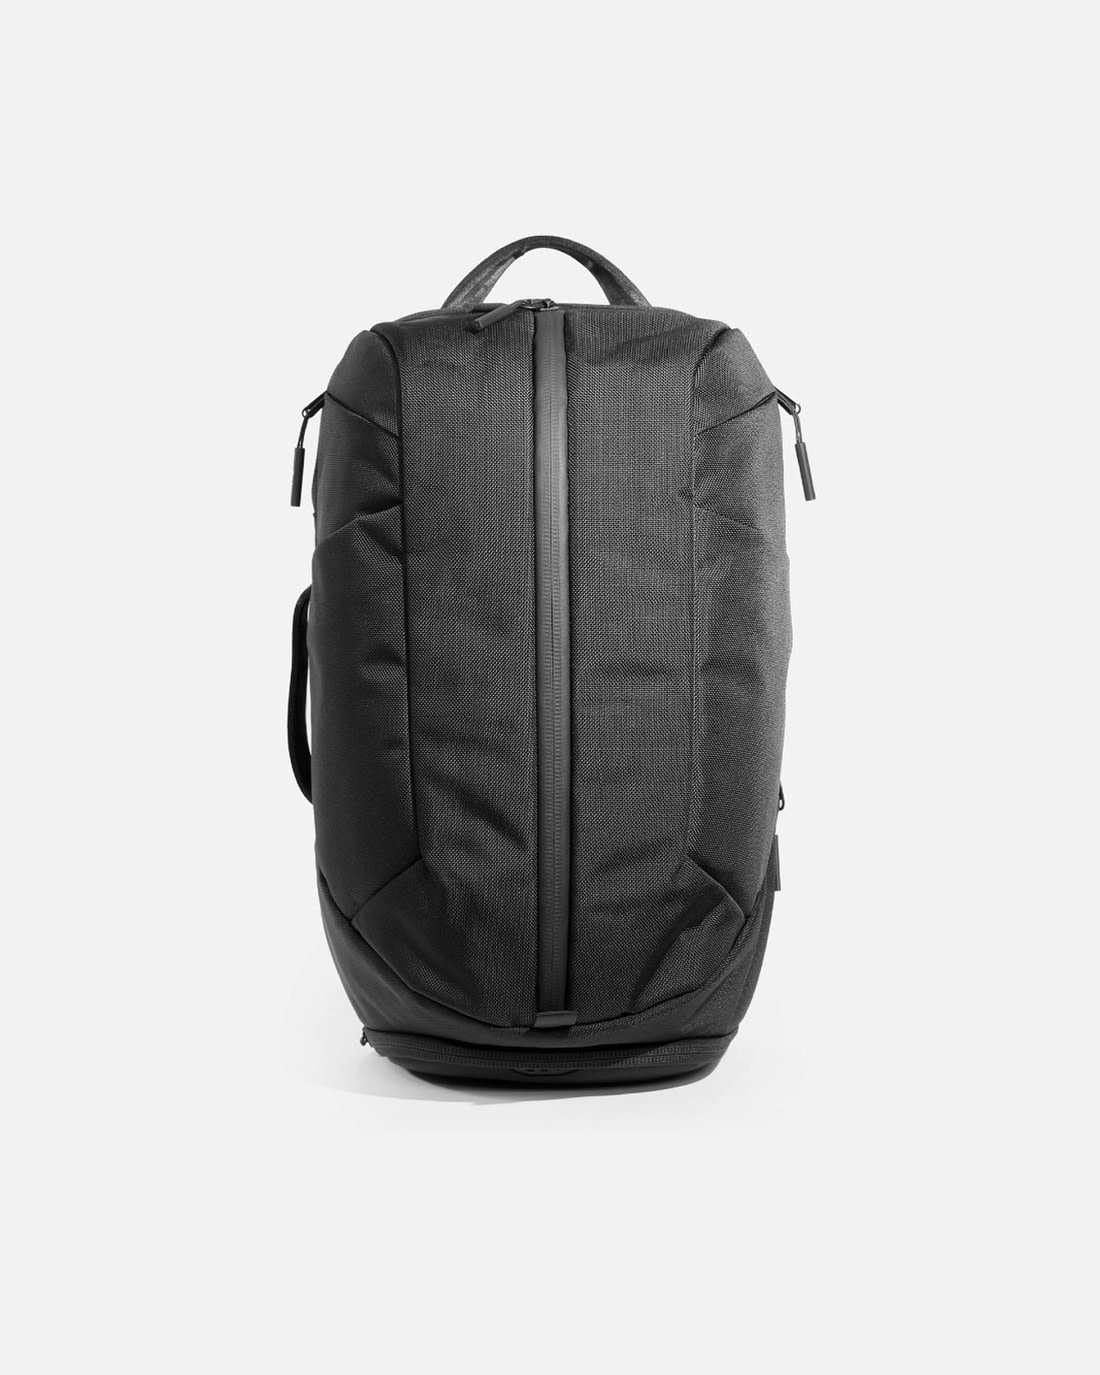 20 BEST Backpack Brands of 2023